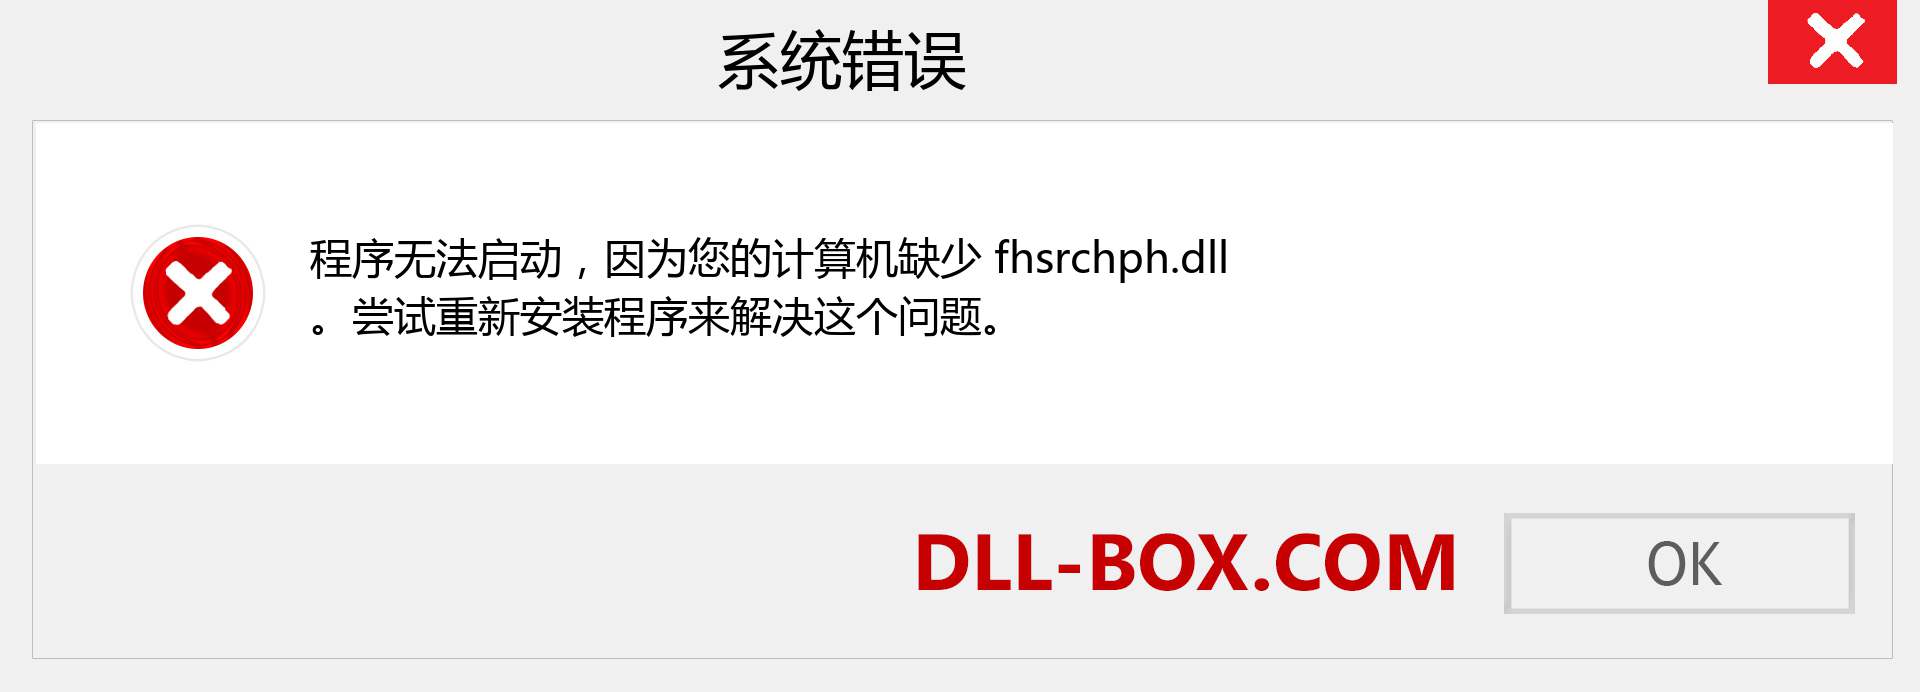 fhsrchph.dll 文件丢失？。 适用于 Windows 7、8、10 的下载 - 修复 Windows、照片、图像上的 fhsrchph dll 丢失错误